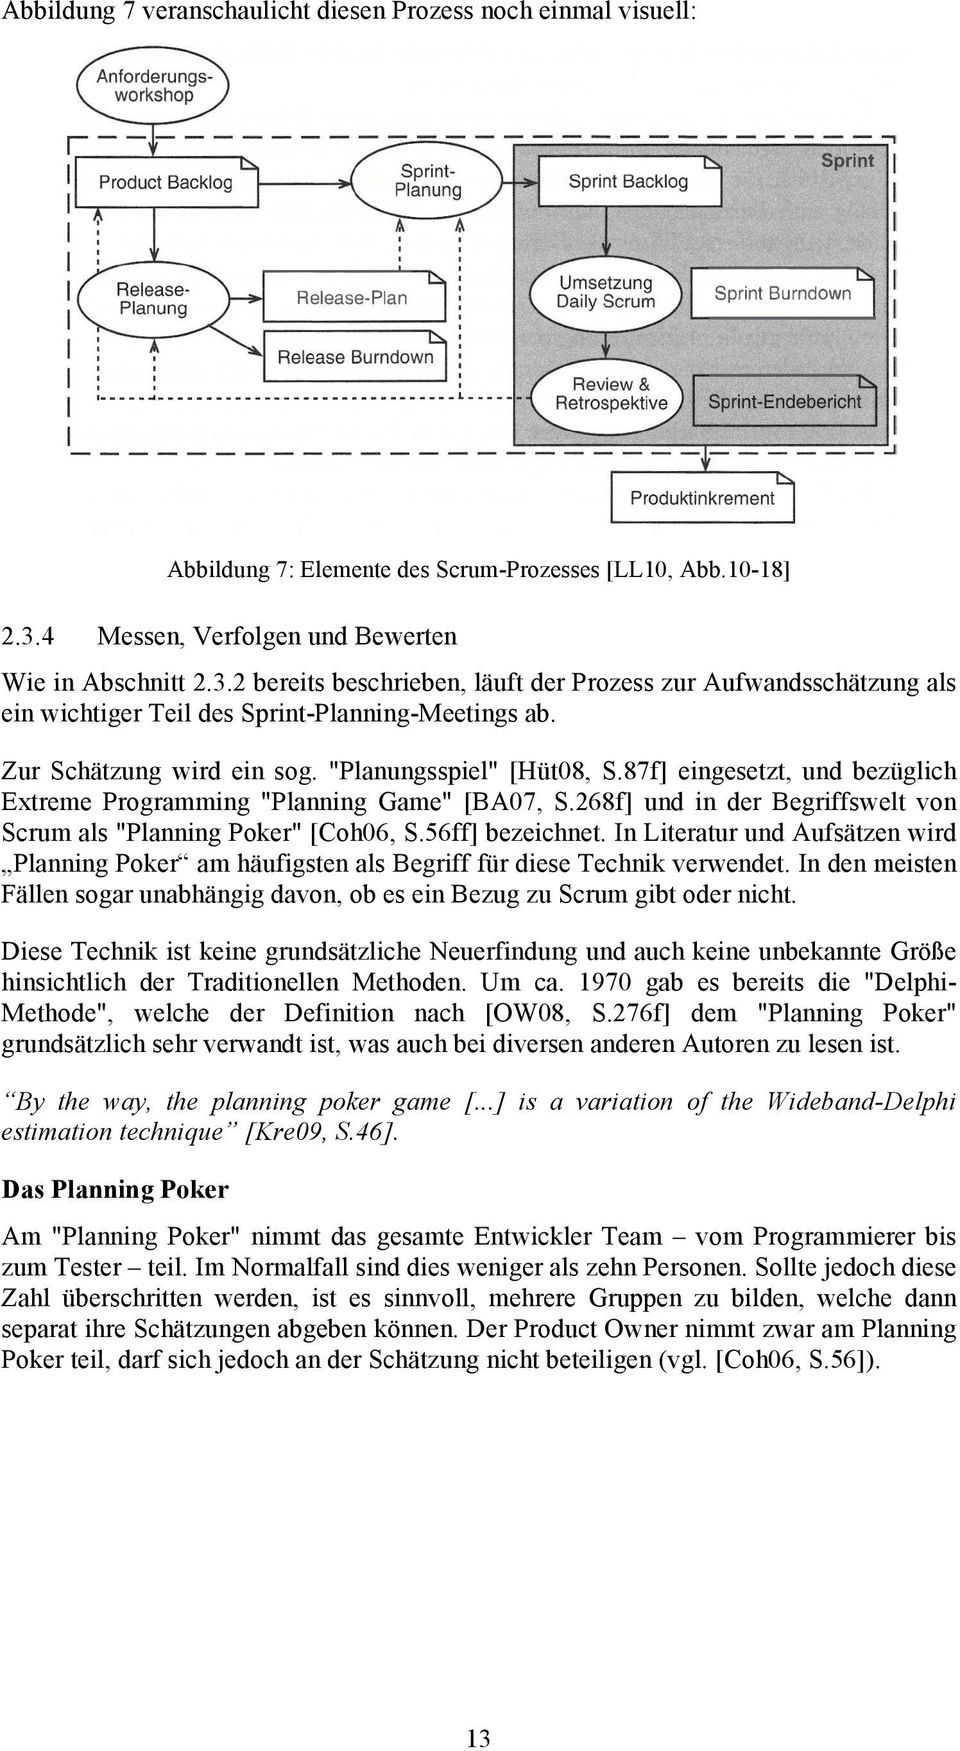 "Planungsspiel" [Hüt08, S.87f] eingesetzt, und bezüglich Extreme Programming "Planning Game" [BA07, S.268f] und in der Begriffswelt von Scrum als "Planning Poker" [Coh06, S.56ff] bezeichnet.